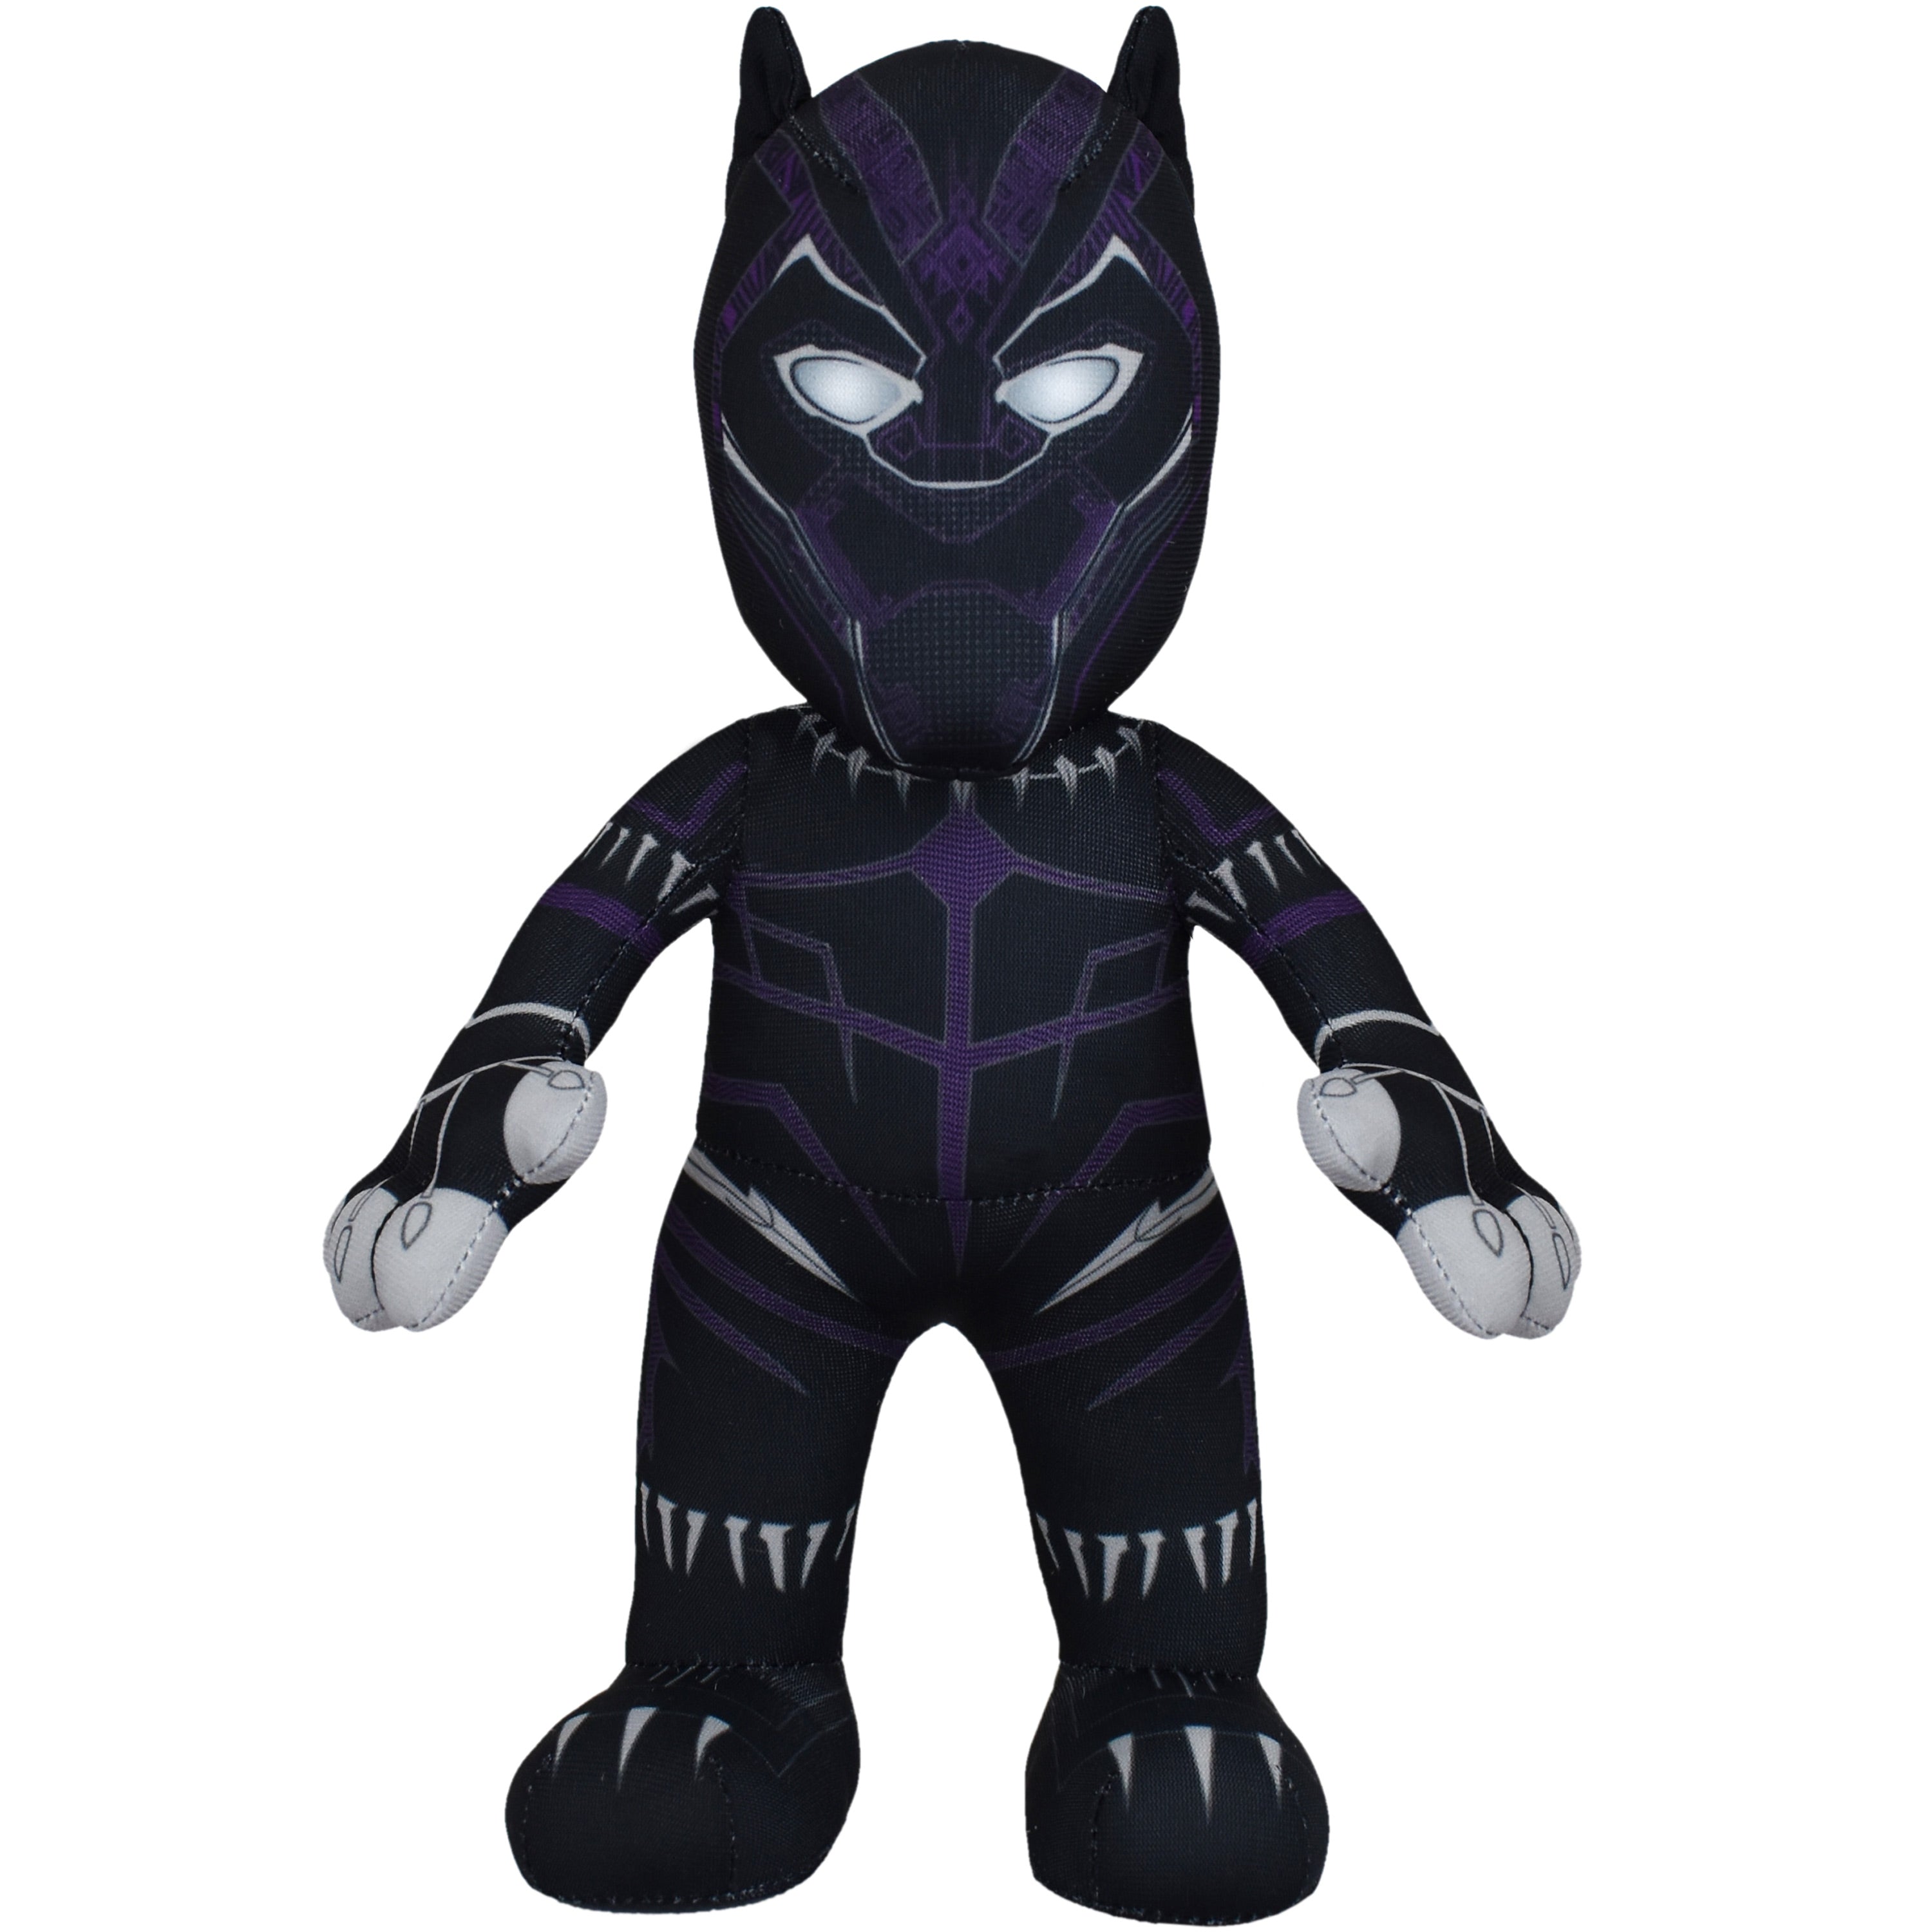 black panther plush toy marvel